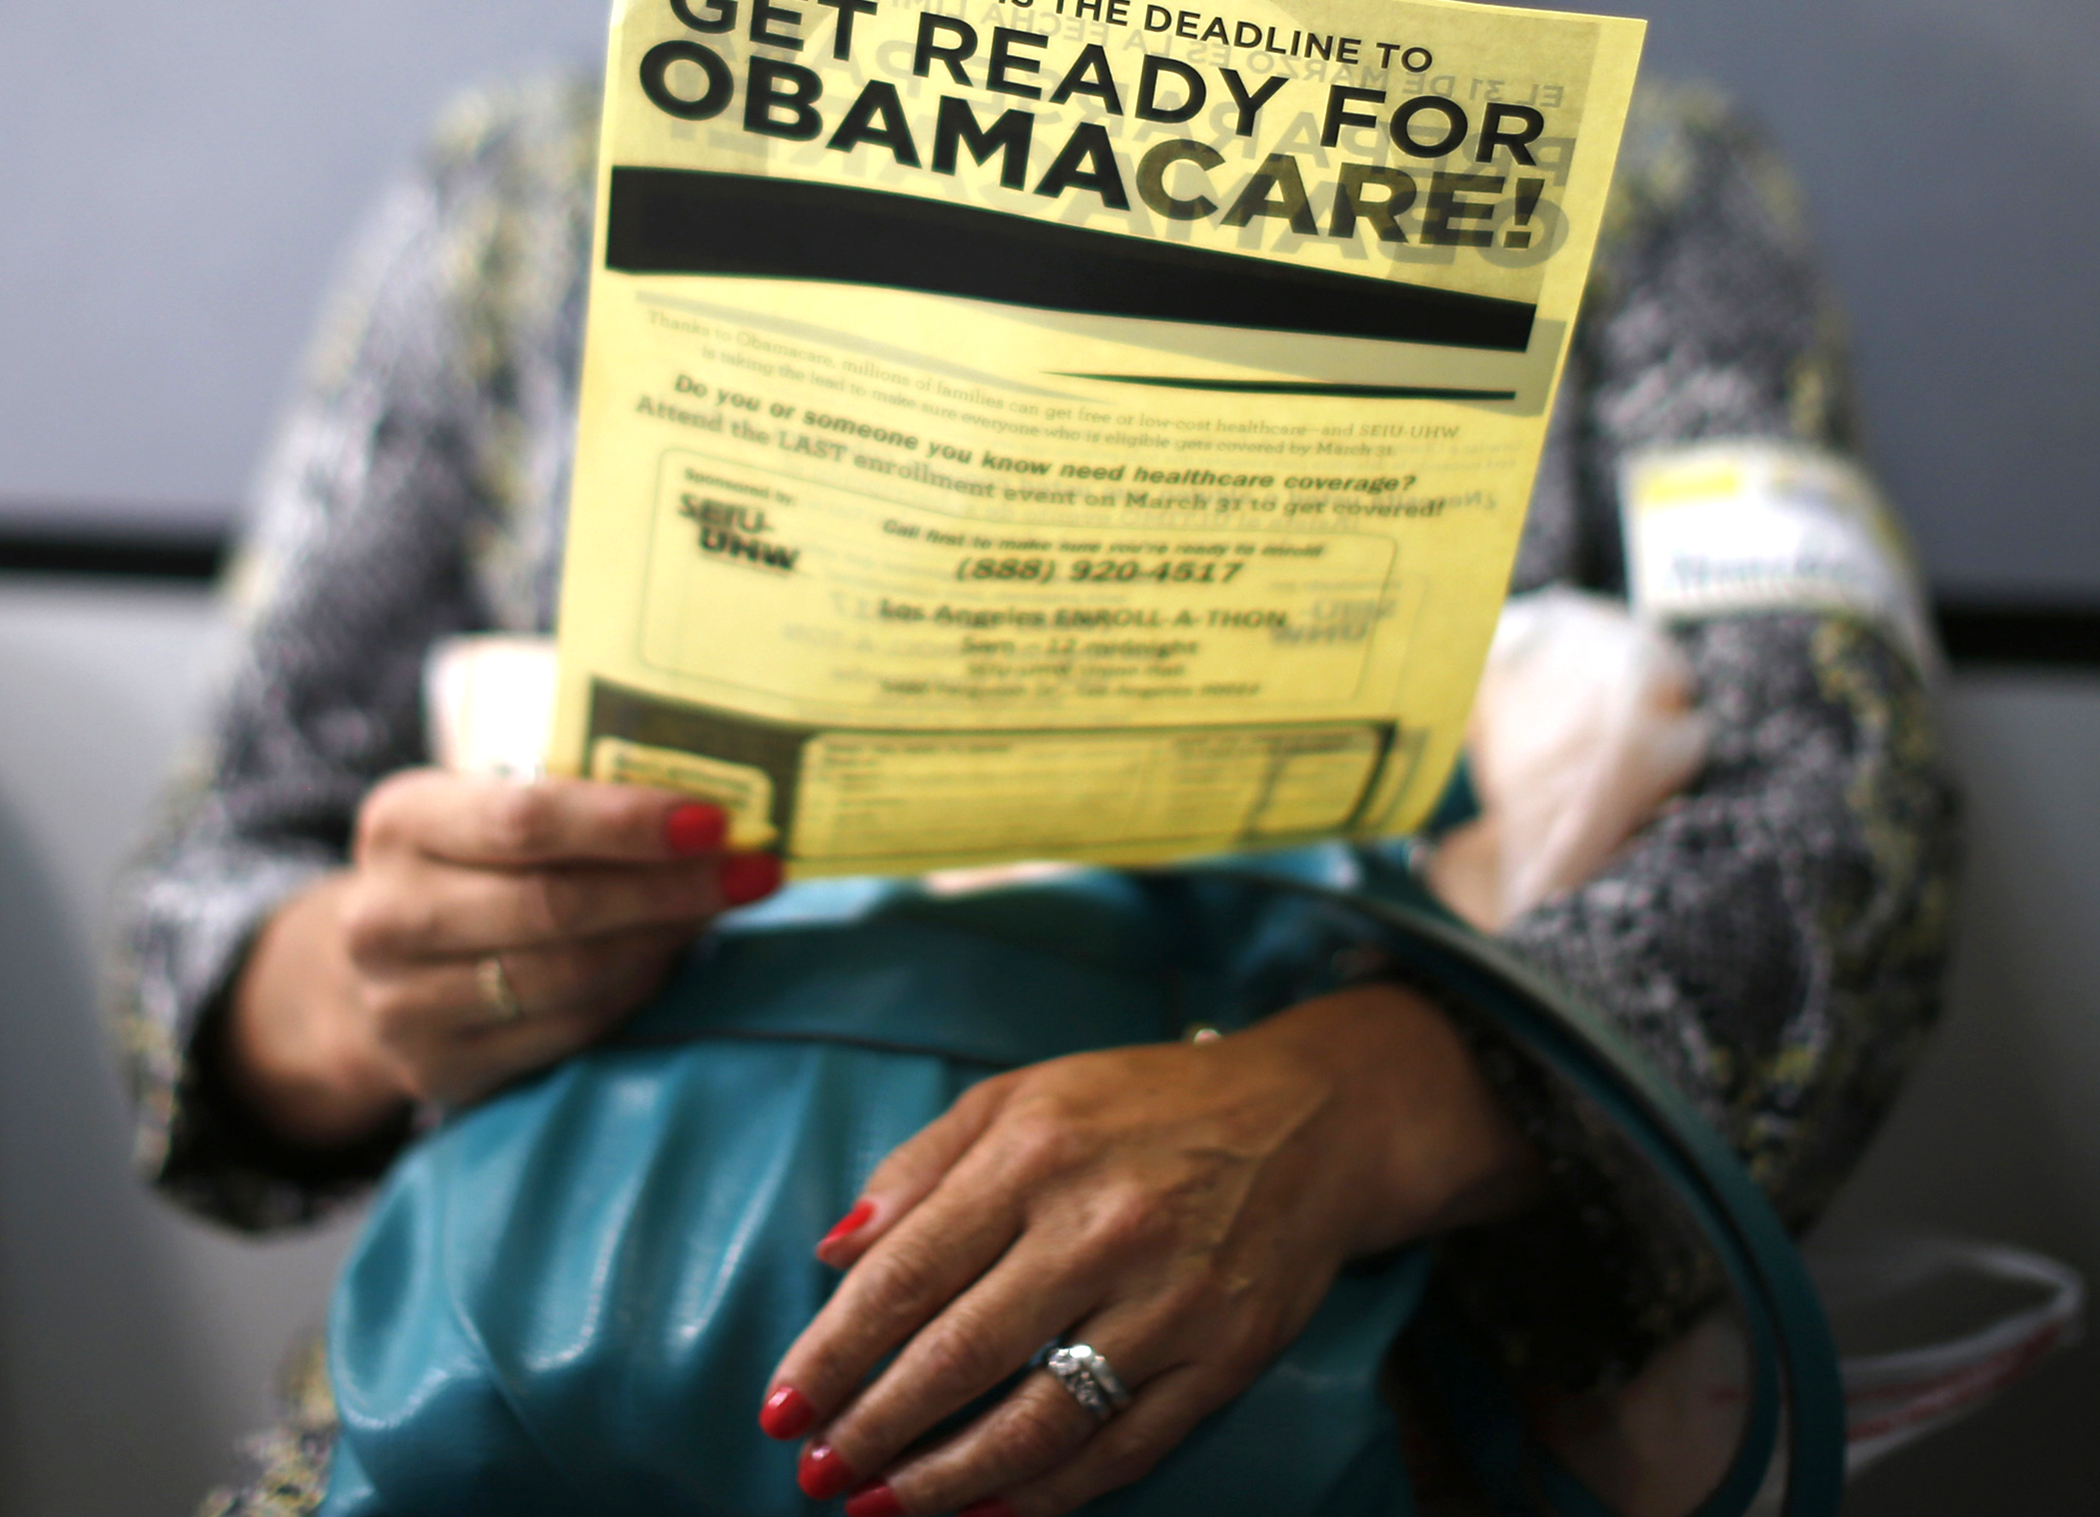 Obamacare Deadline You Should Sign Up for 2017 Coverage Money